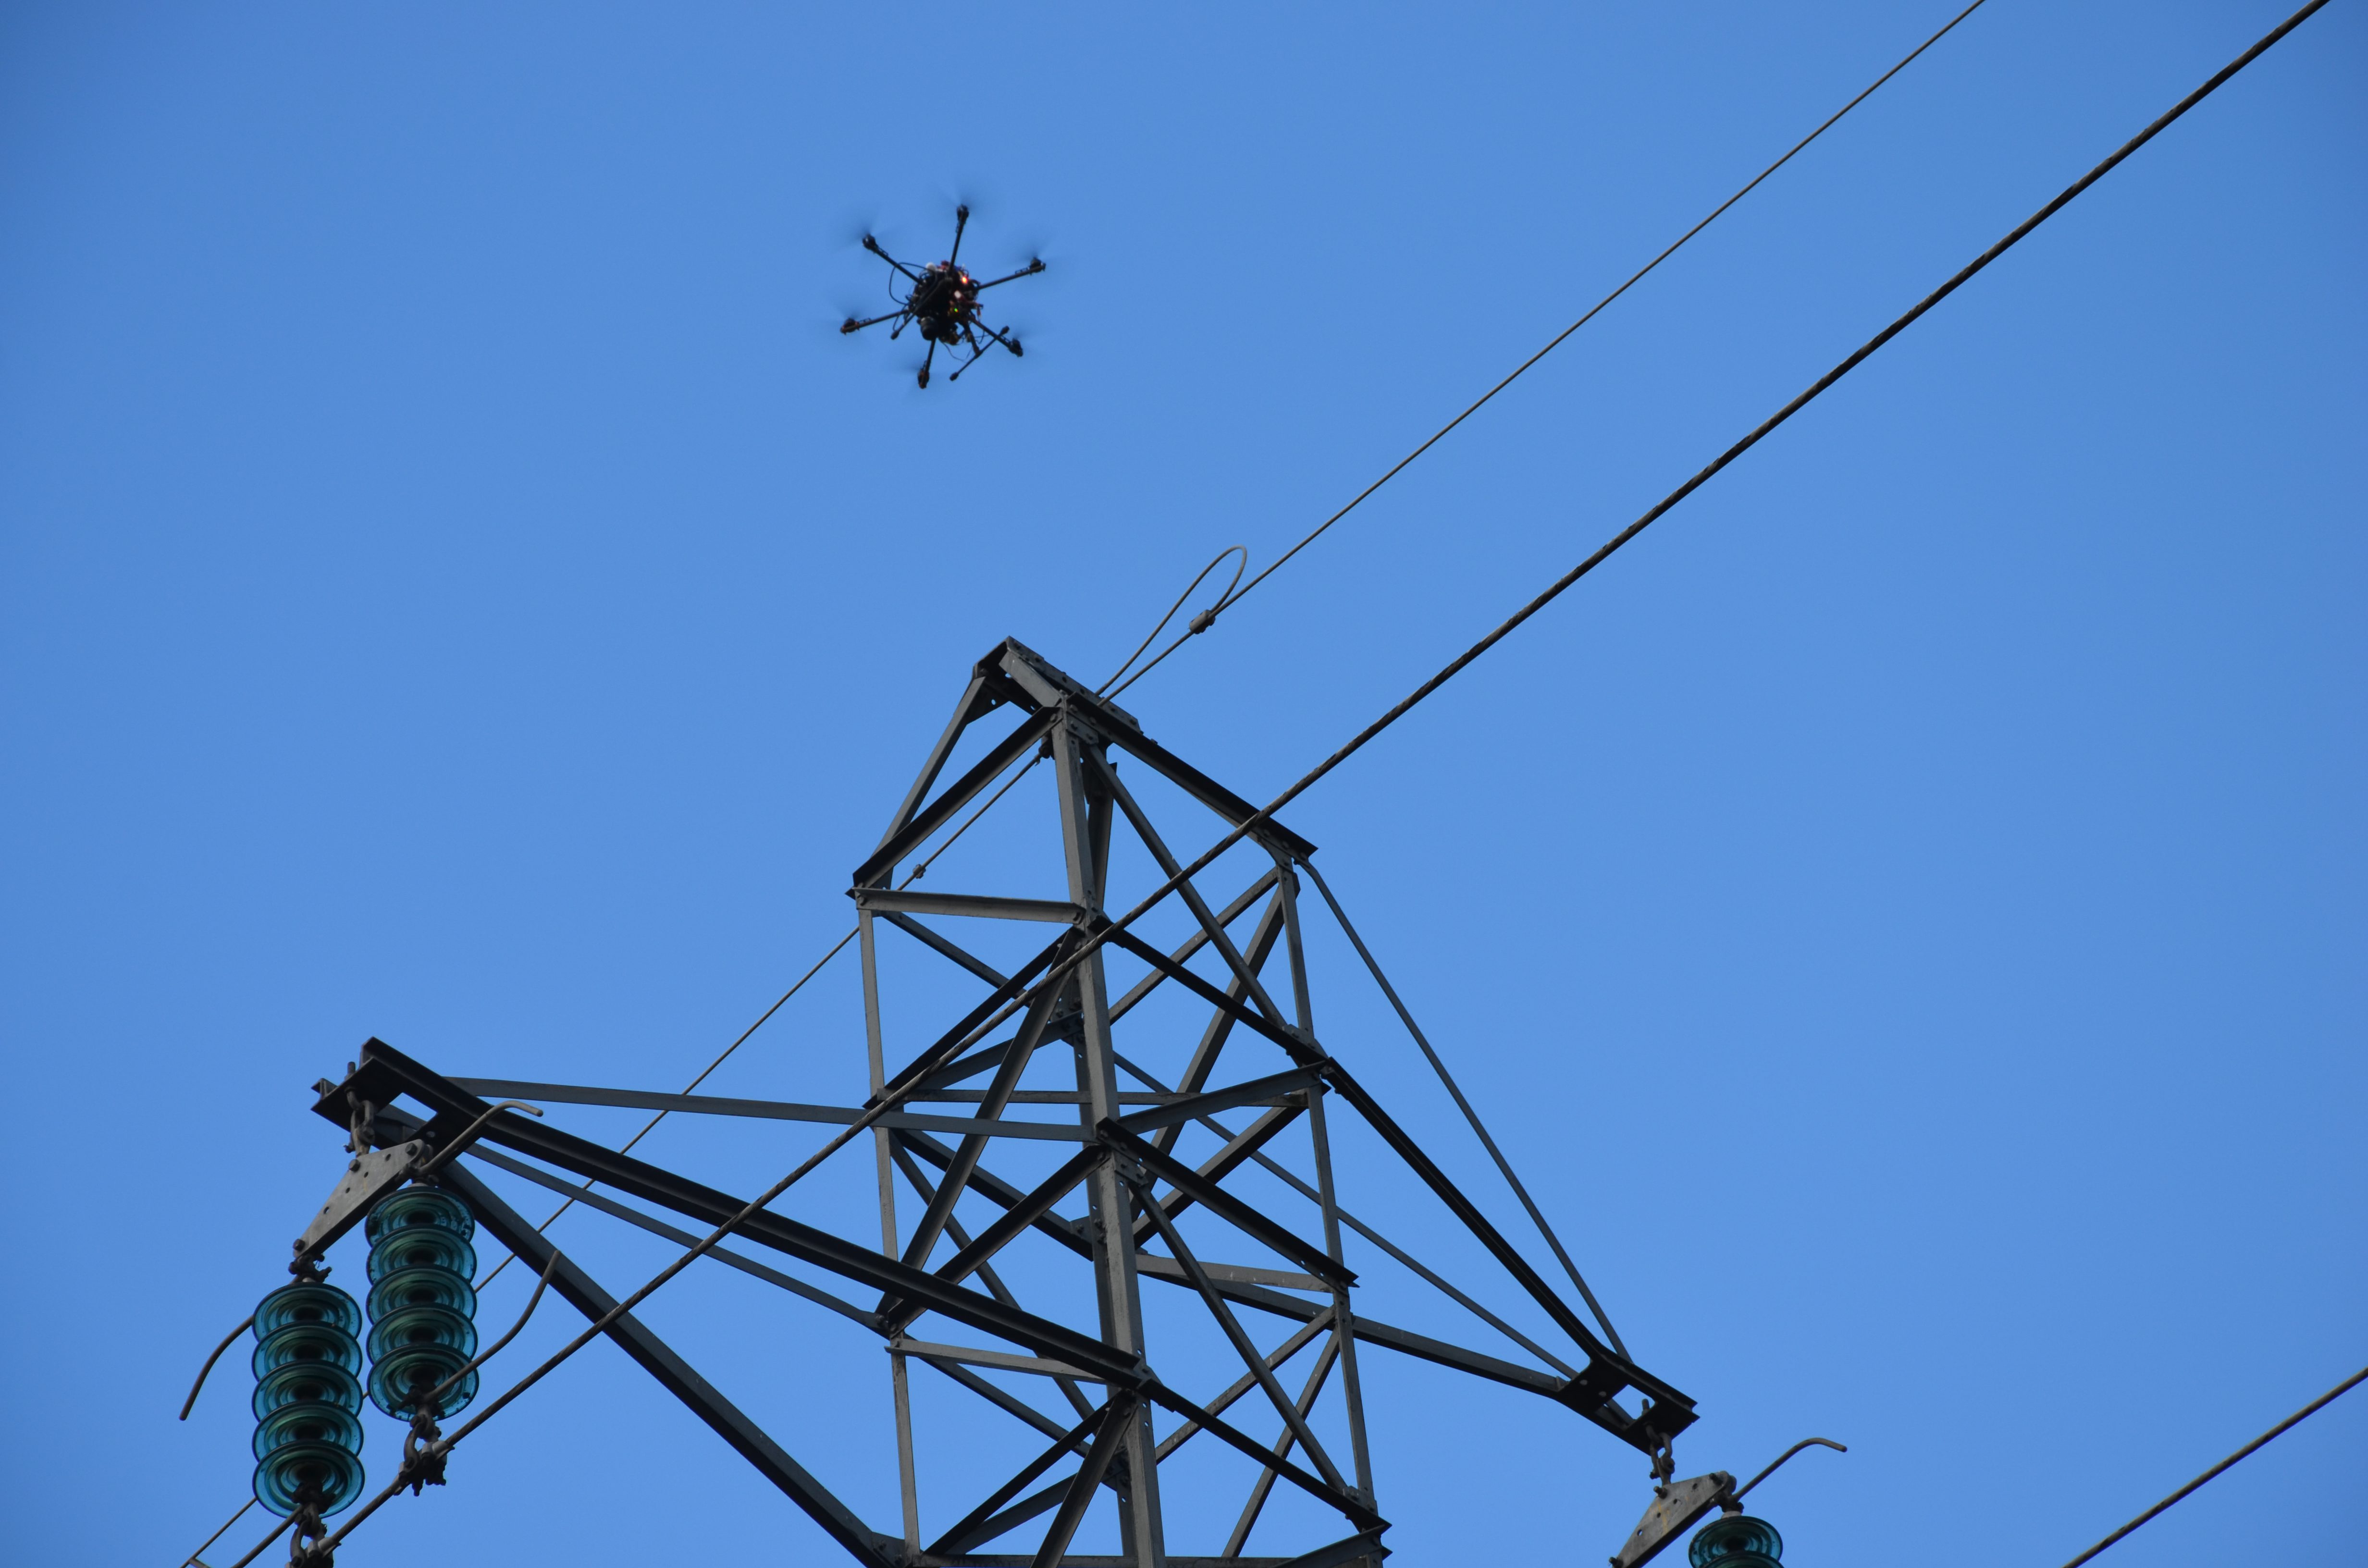 Le drone est aussi utilisé
pour la surveillance des réseaux
électriques. © D.R.